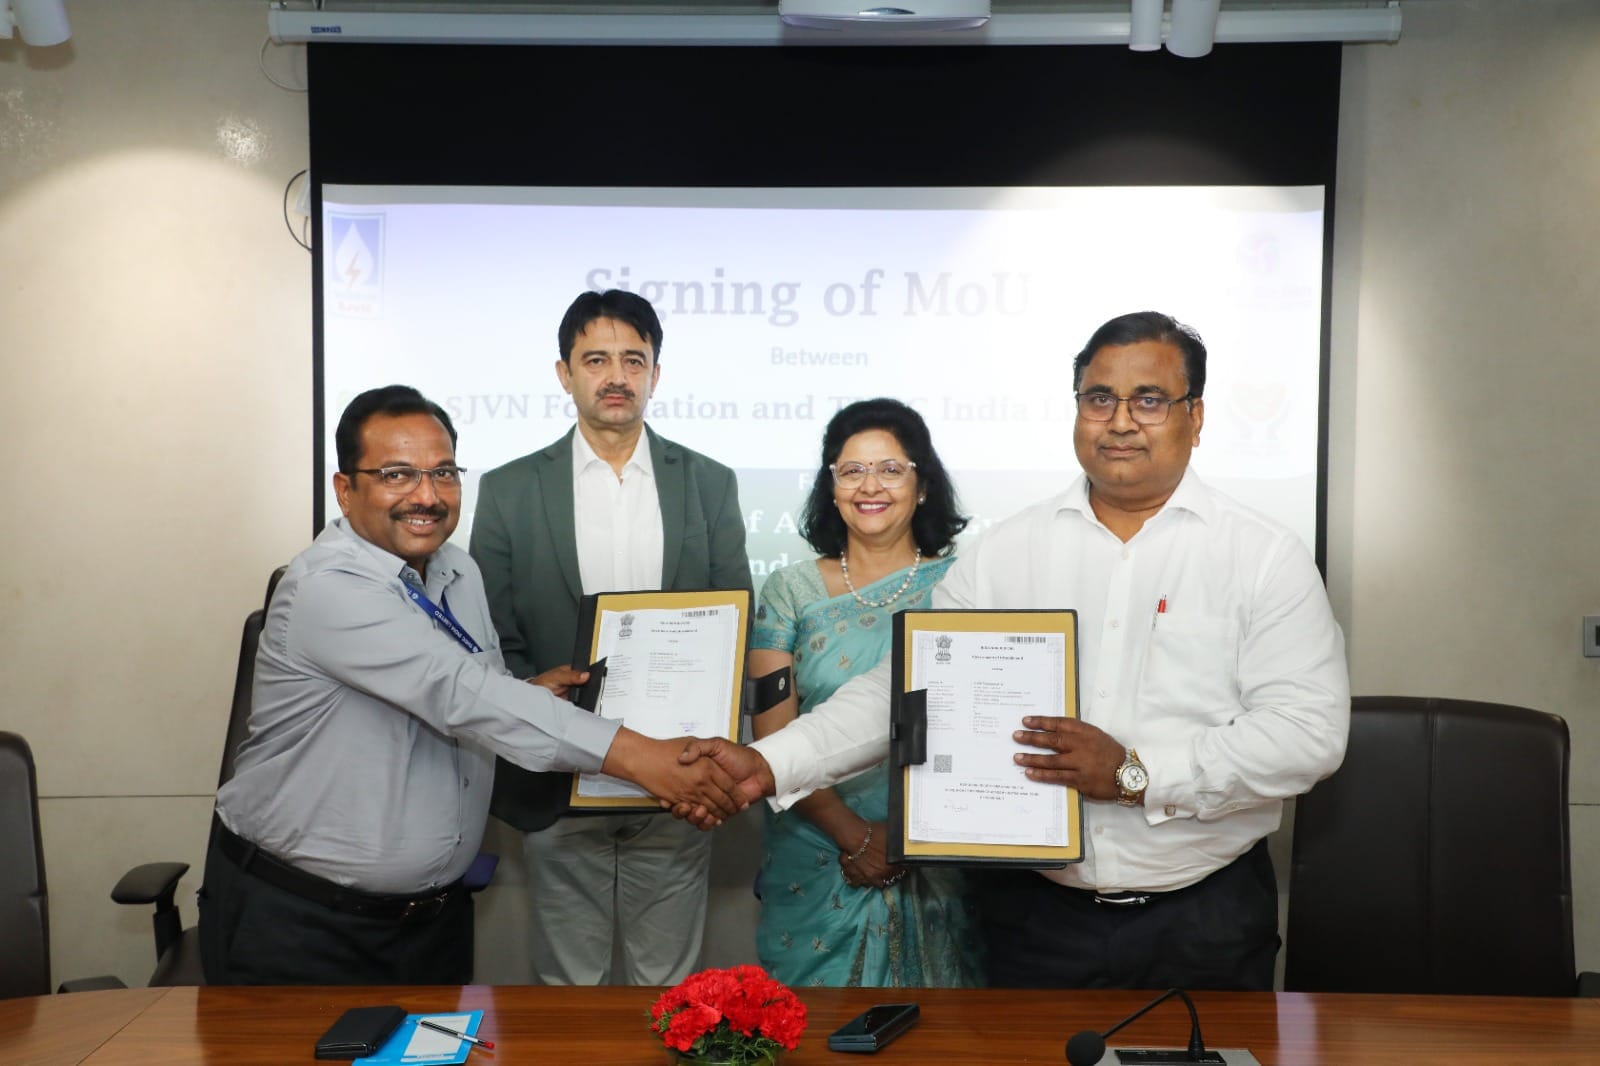 टीएचडीसी इंडिया और एसजेवीएन ने टिहरी पावर कॉम्प्लेक्स में हाई-परफॉर्मेंस अकादमी के विकास को एमओयू पर किए हस्ताक्षर